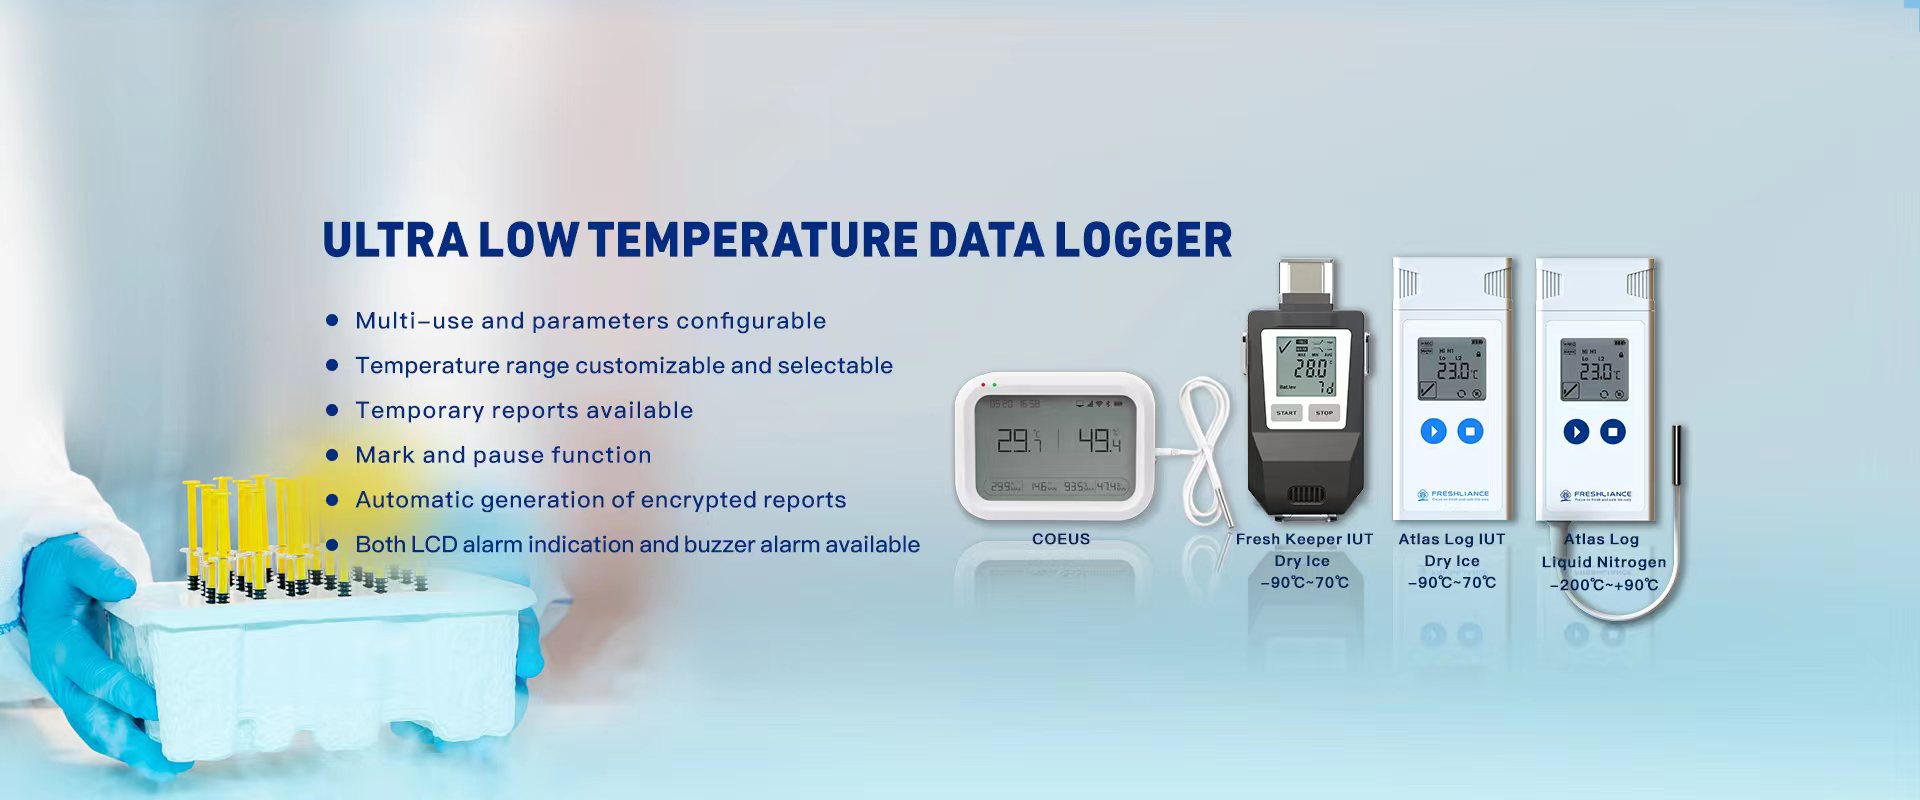 Digital Temperature Gauge With Data Logging, Alarm & Messaging